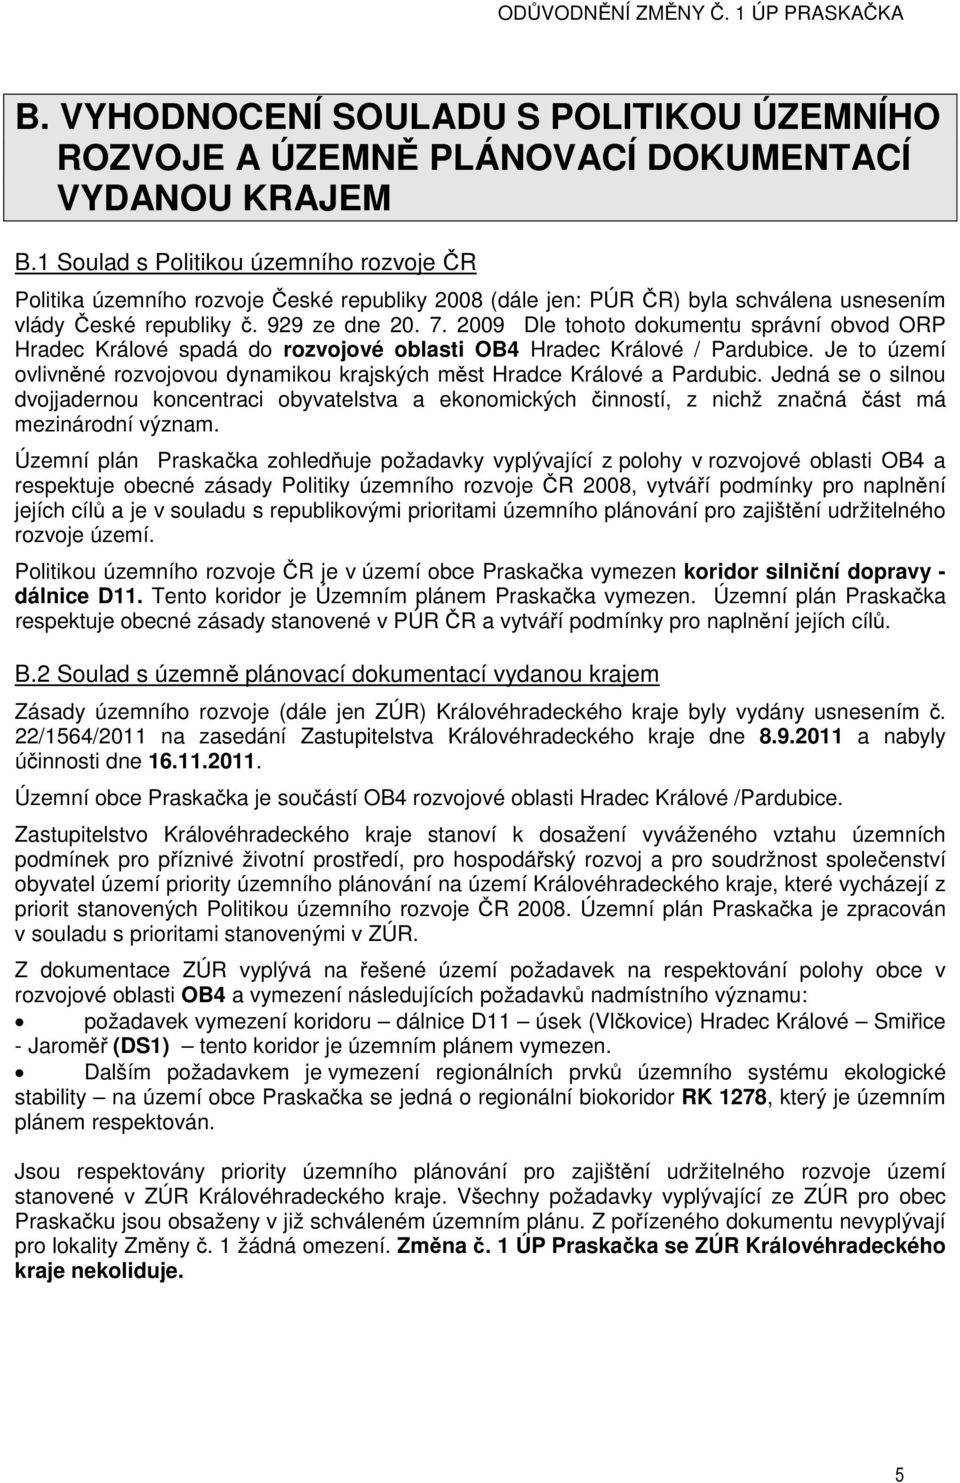 2009 Dle tohoto dokumentu správní obvod ORP Hradec Králové spadá do rozvojové oblasti OB4 Hradec Králové / Pardubice.